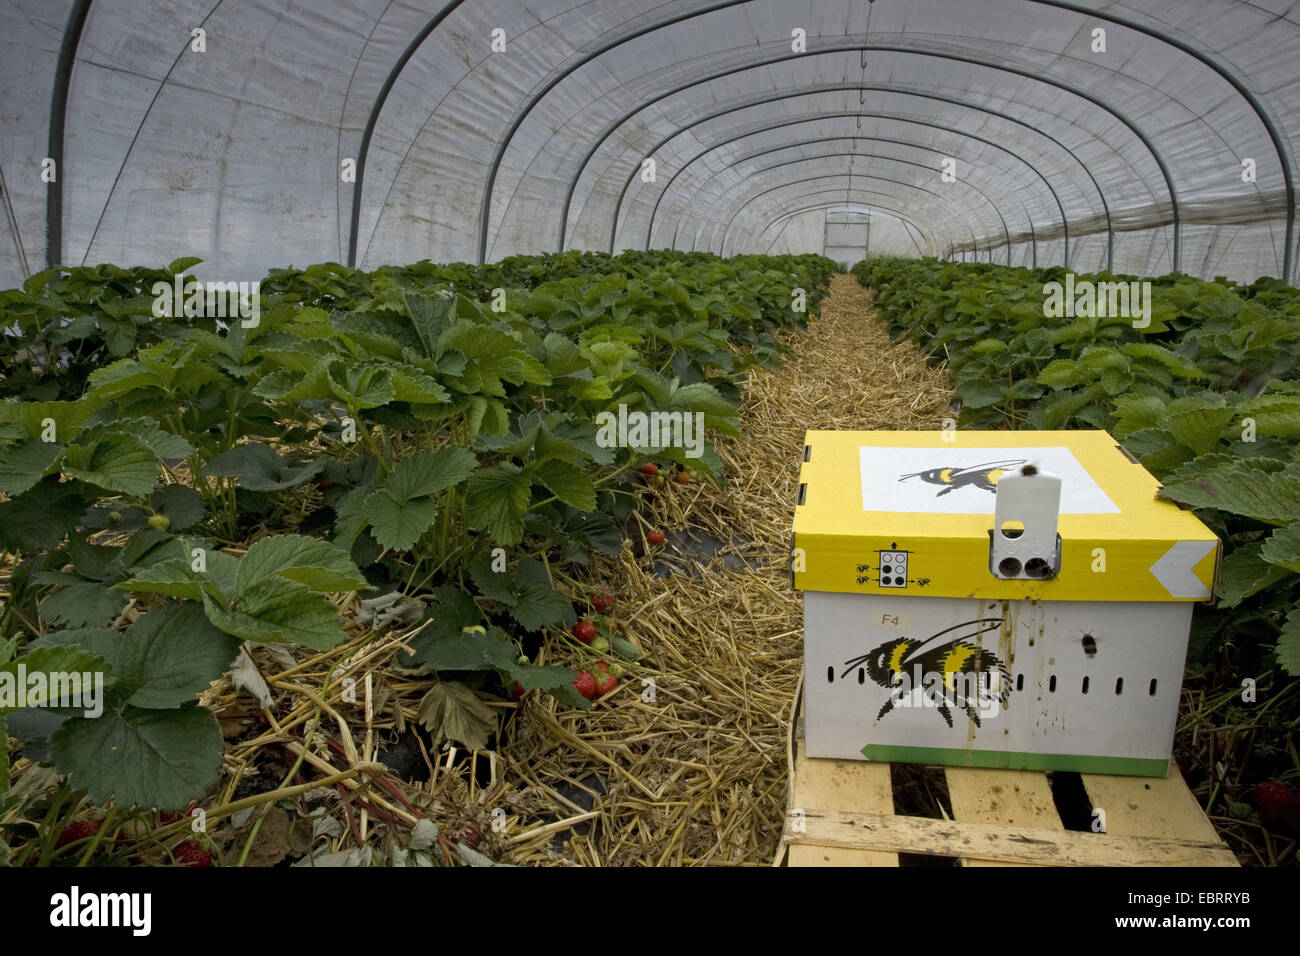 Fraise, fraise jardin hybride (Fragaria x ananassa, Fragaria ananassa),  portable des ruches pour la pollinisation des fraises dans une serre,  Belgique, Flandre orientale, Brakel Photo Stock - Alamy